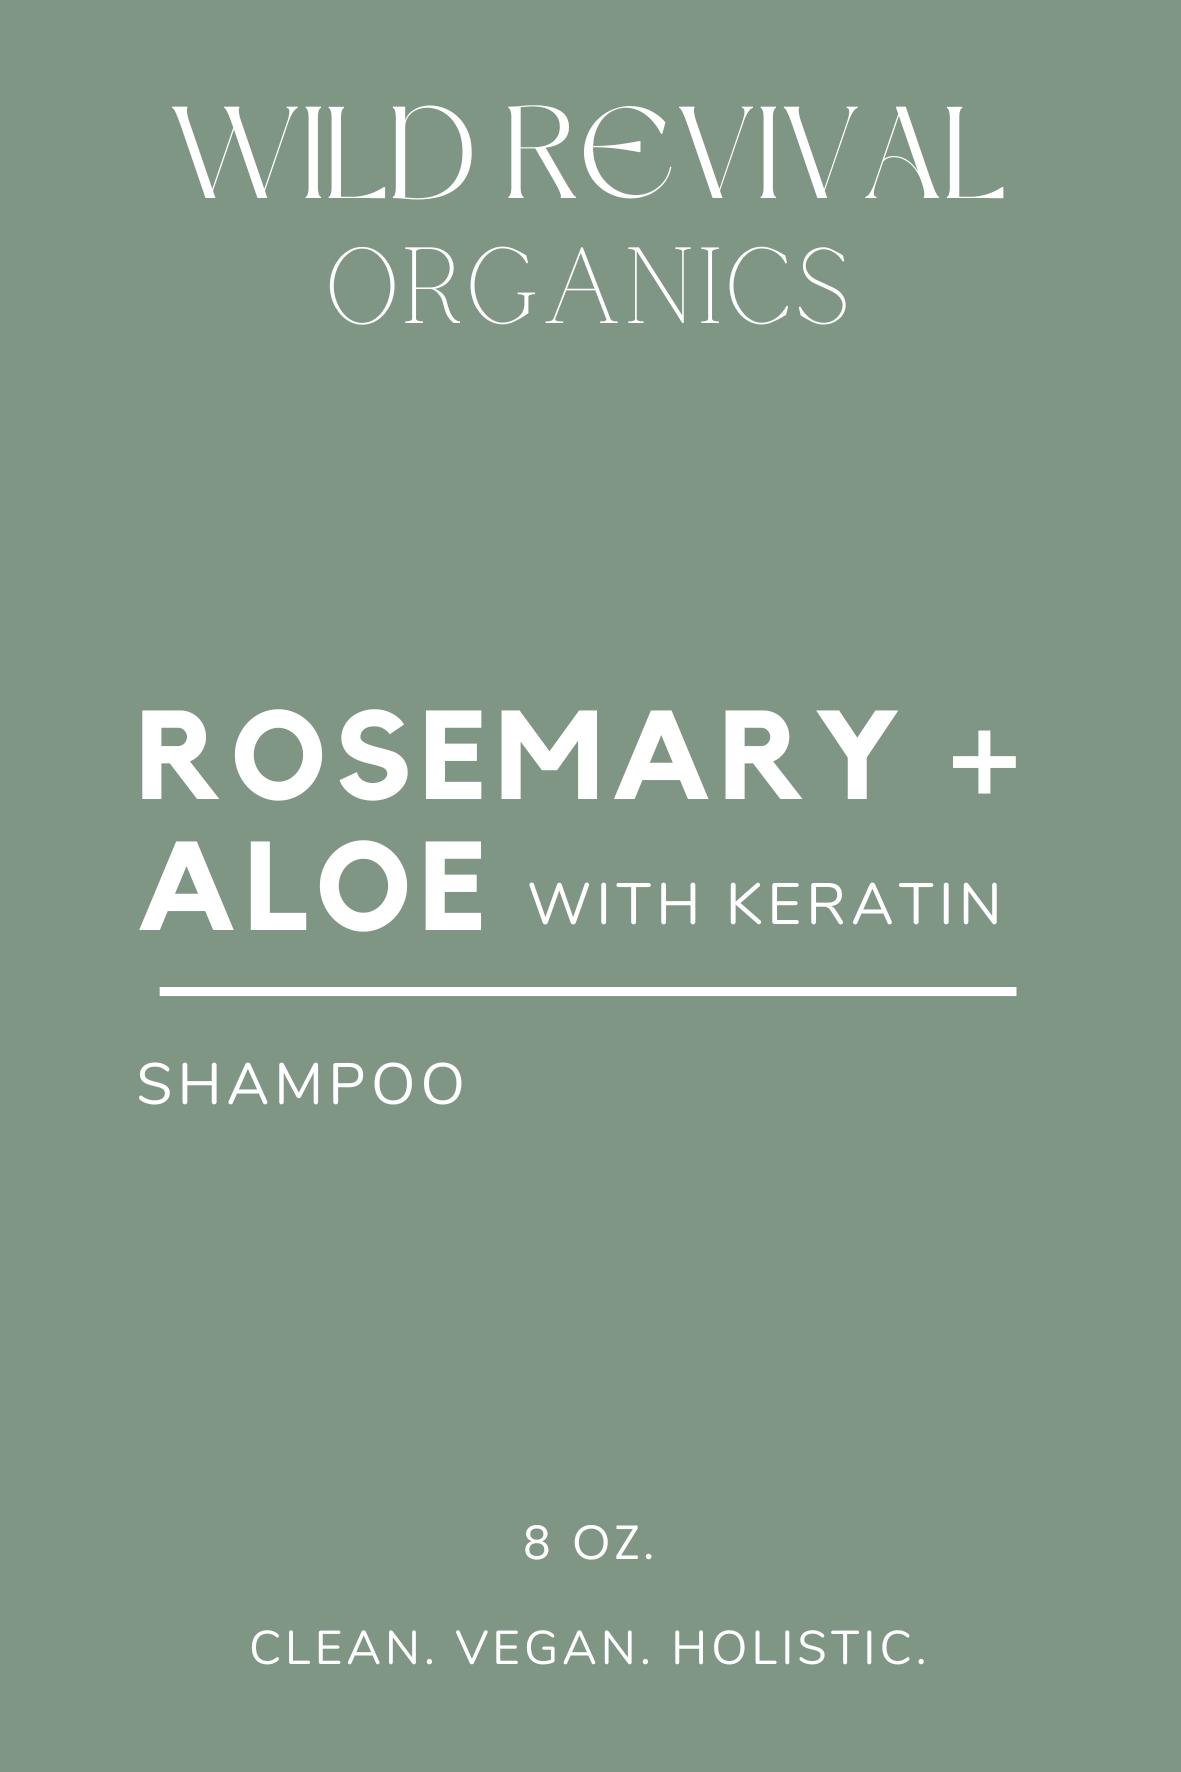 *NEW* ROSEMARY + ALOE with Vegetable Keratin - 8oz. Shampoo - Wild Revival Organics